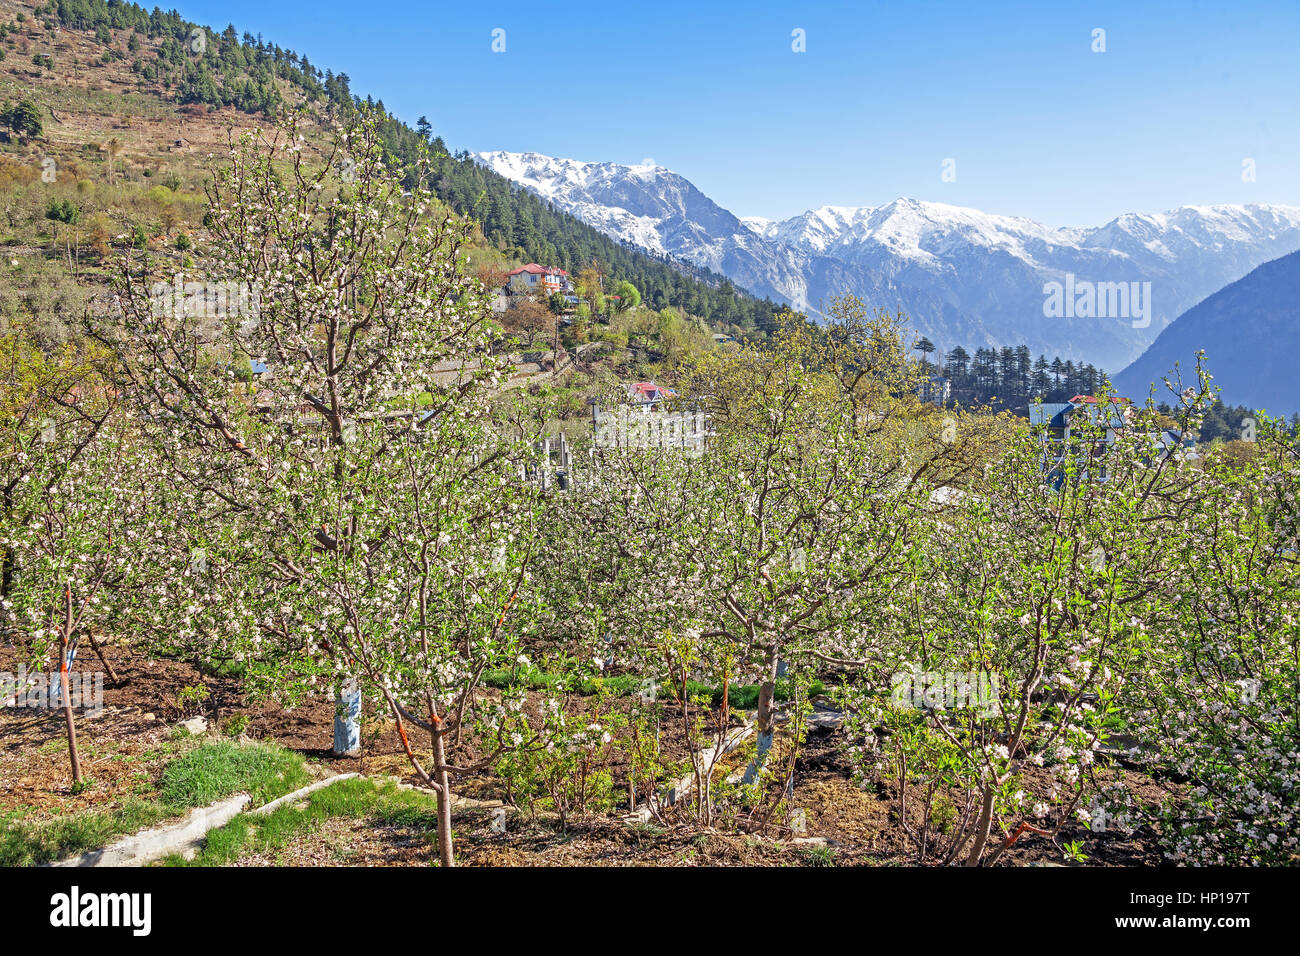 Molla di fioritura e meleto sullo sfondo di montagne innevate. Spiti valley, Himachal Pradesh, India. Foto Stock